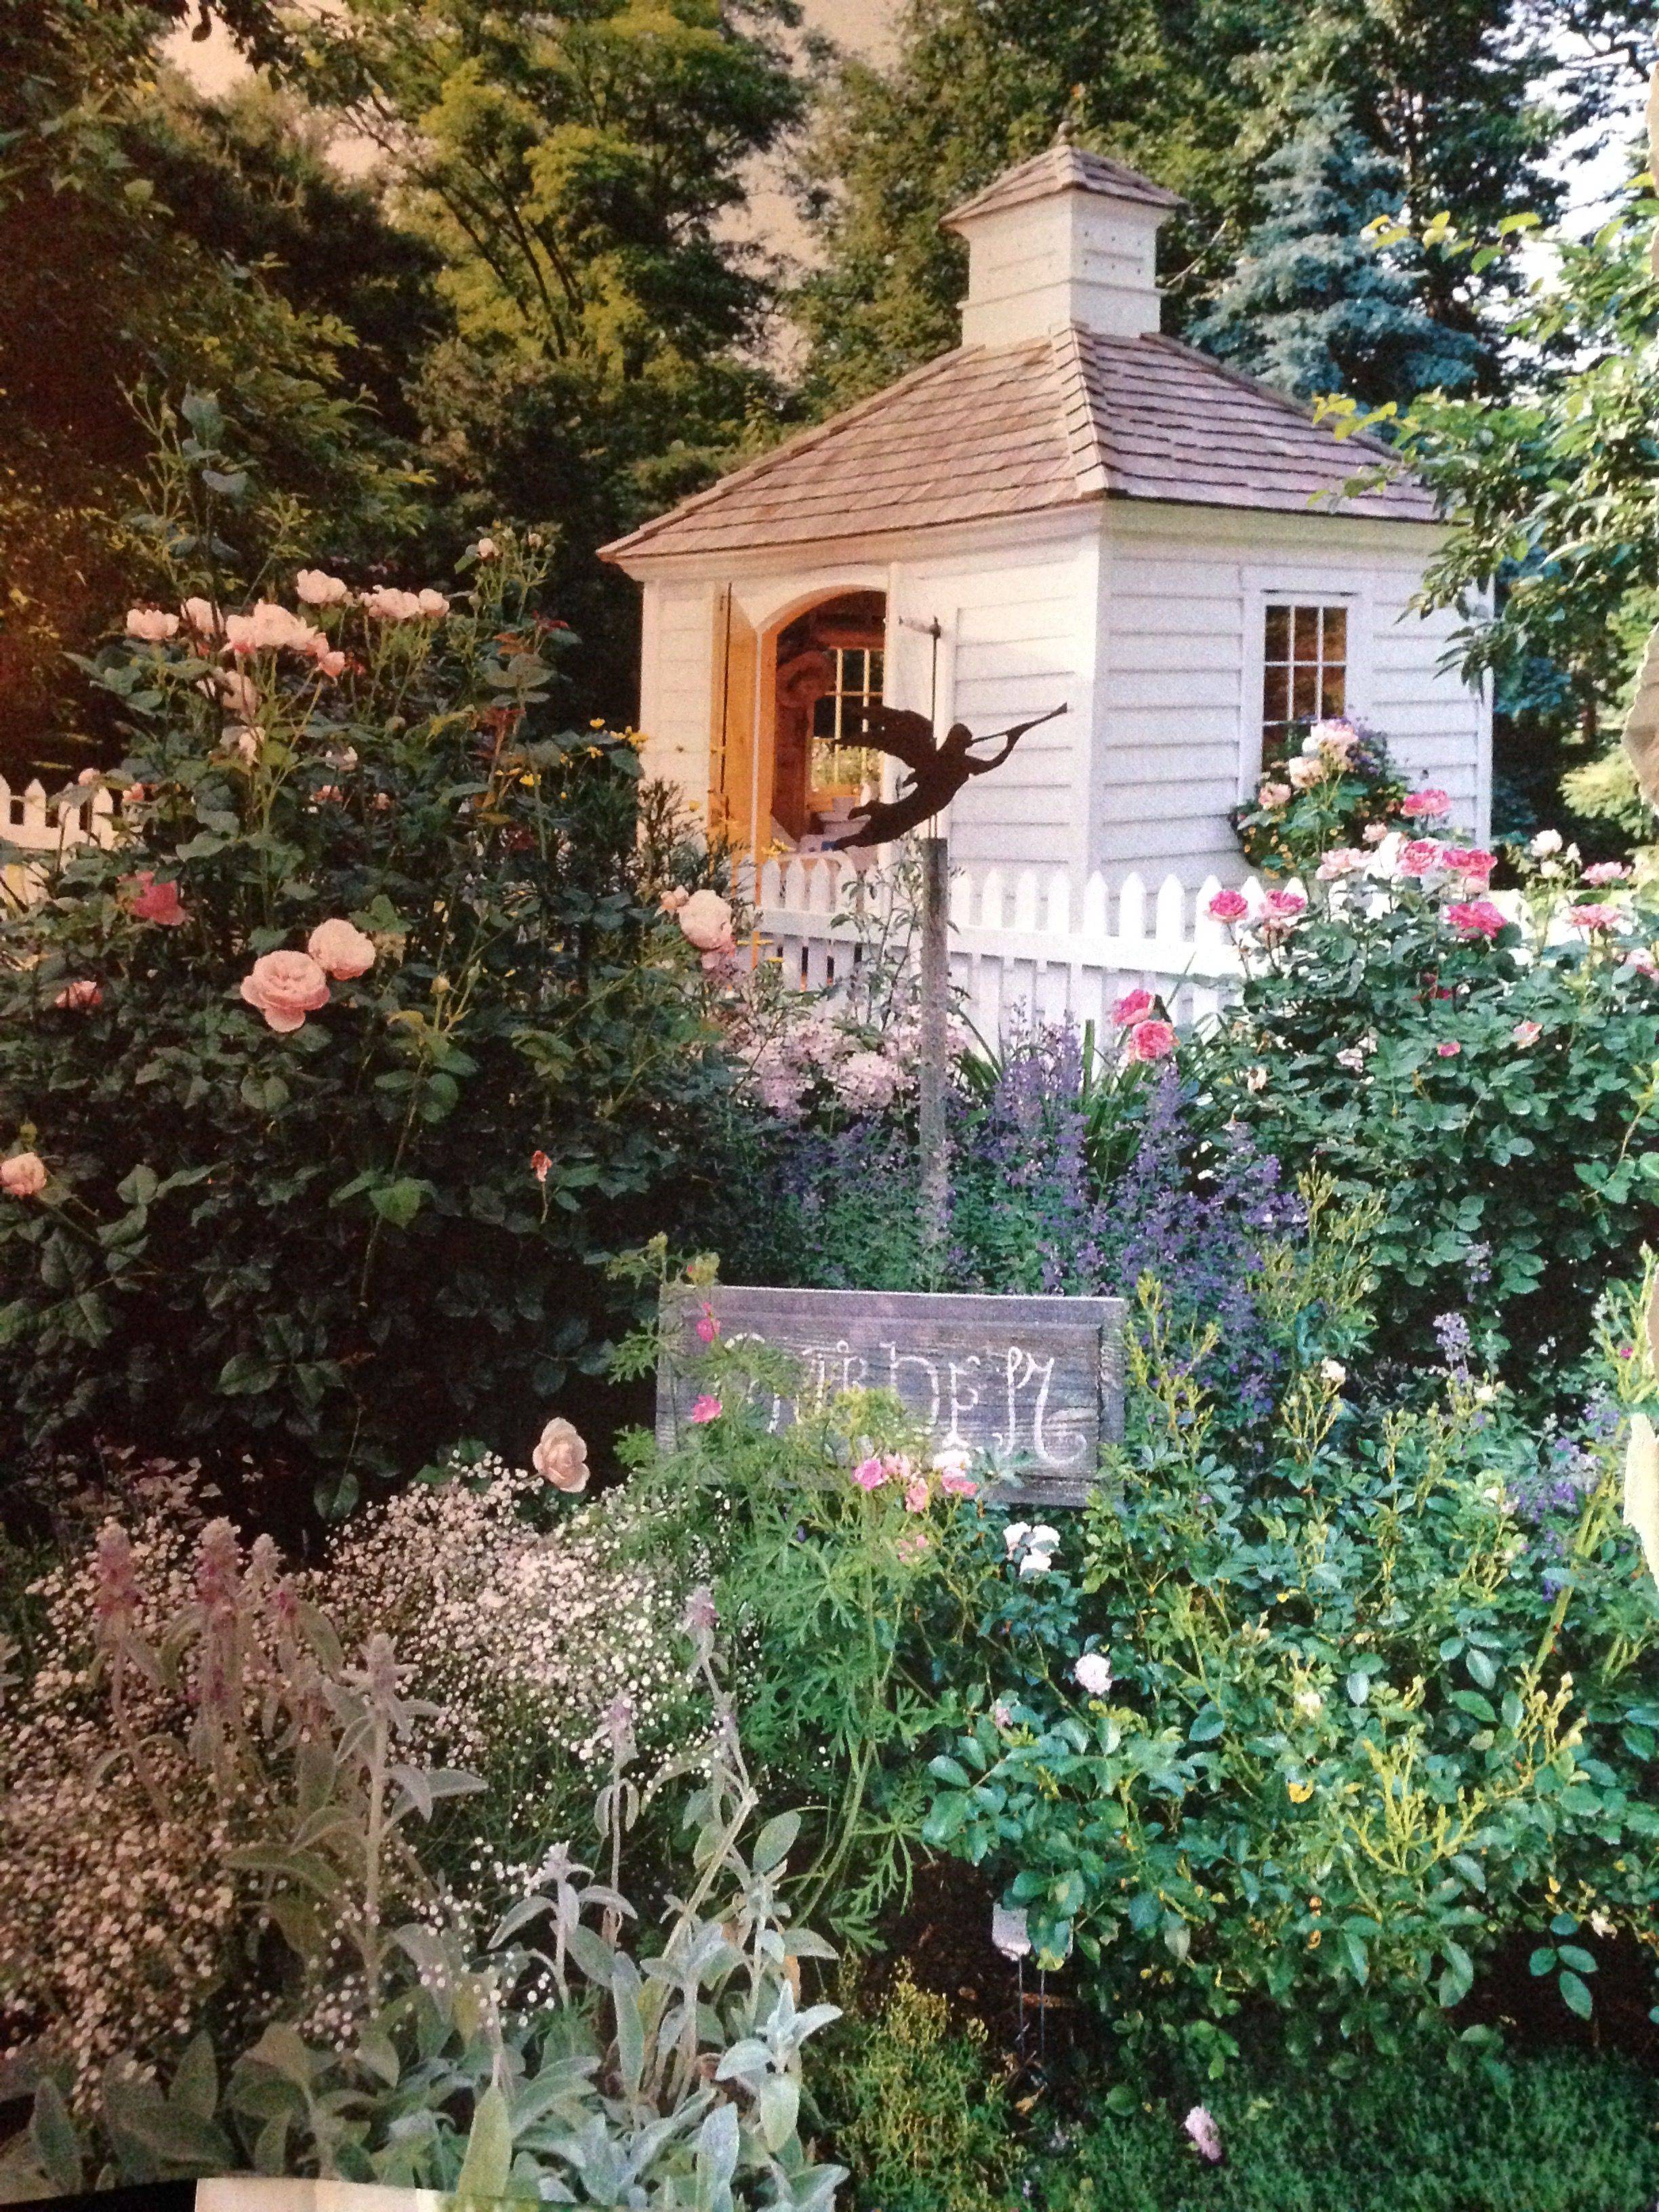 Beatuy English Cottage Gardening Ideas Inspiration